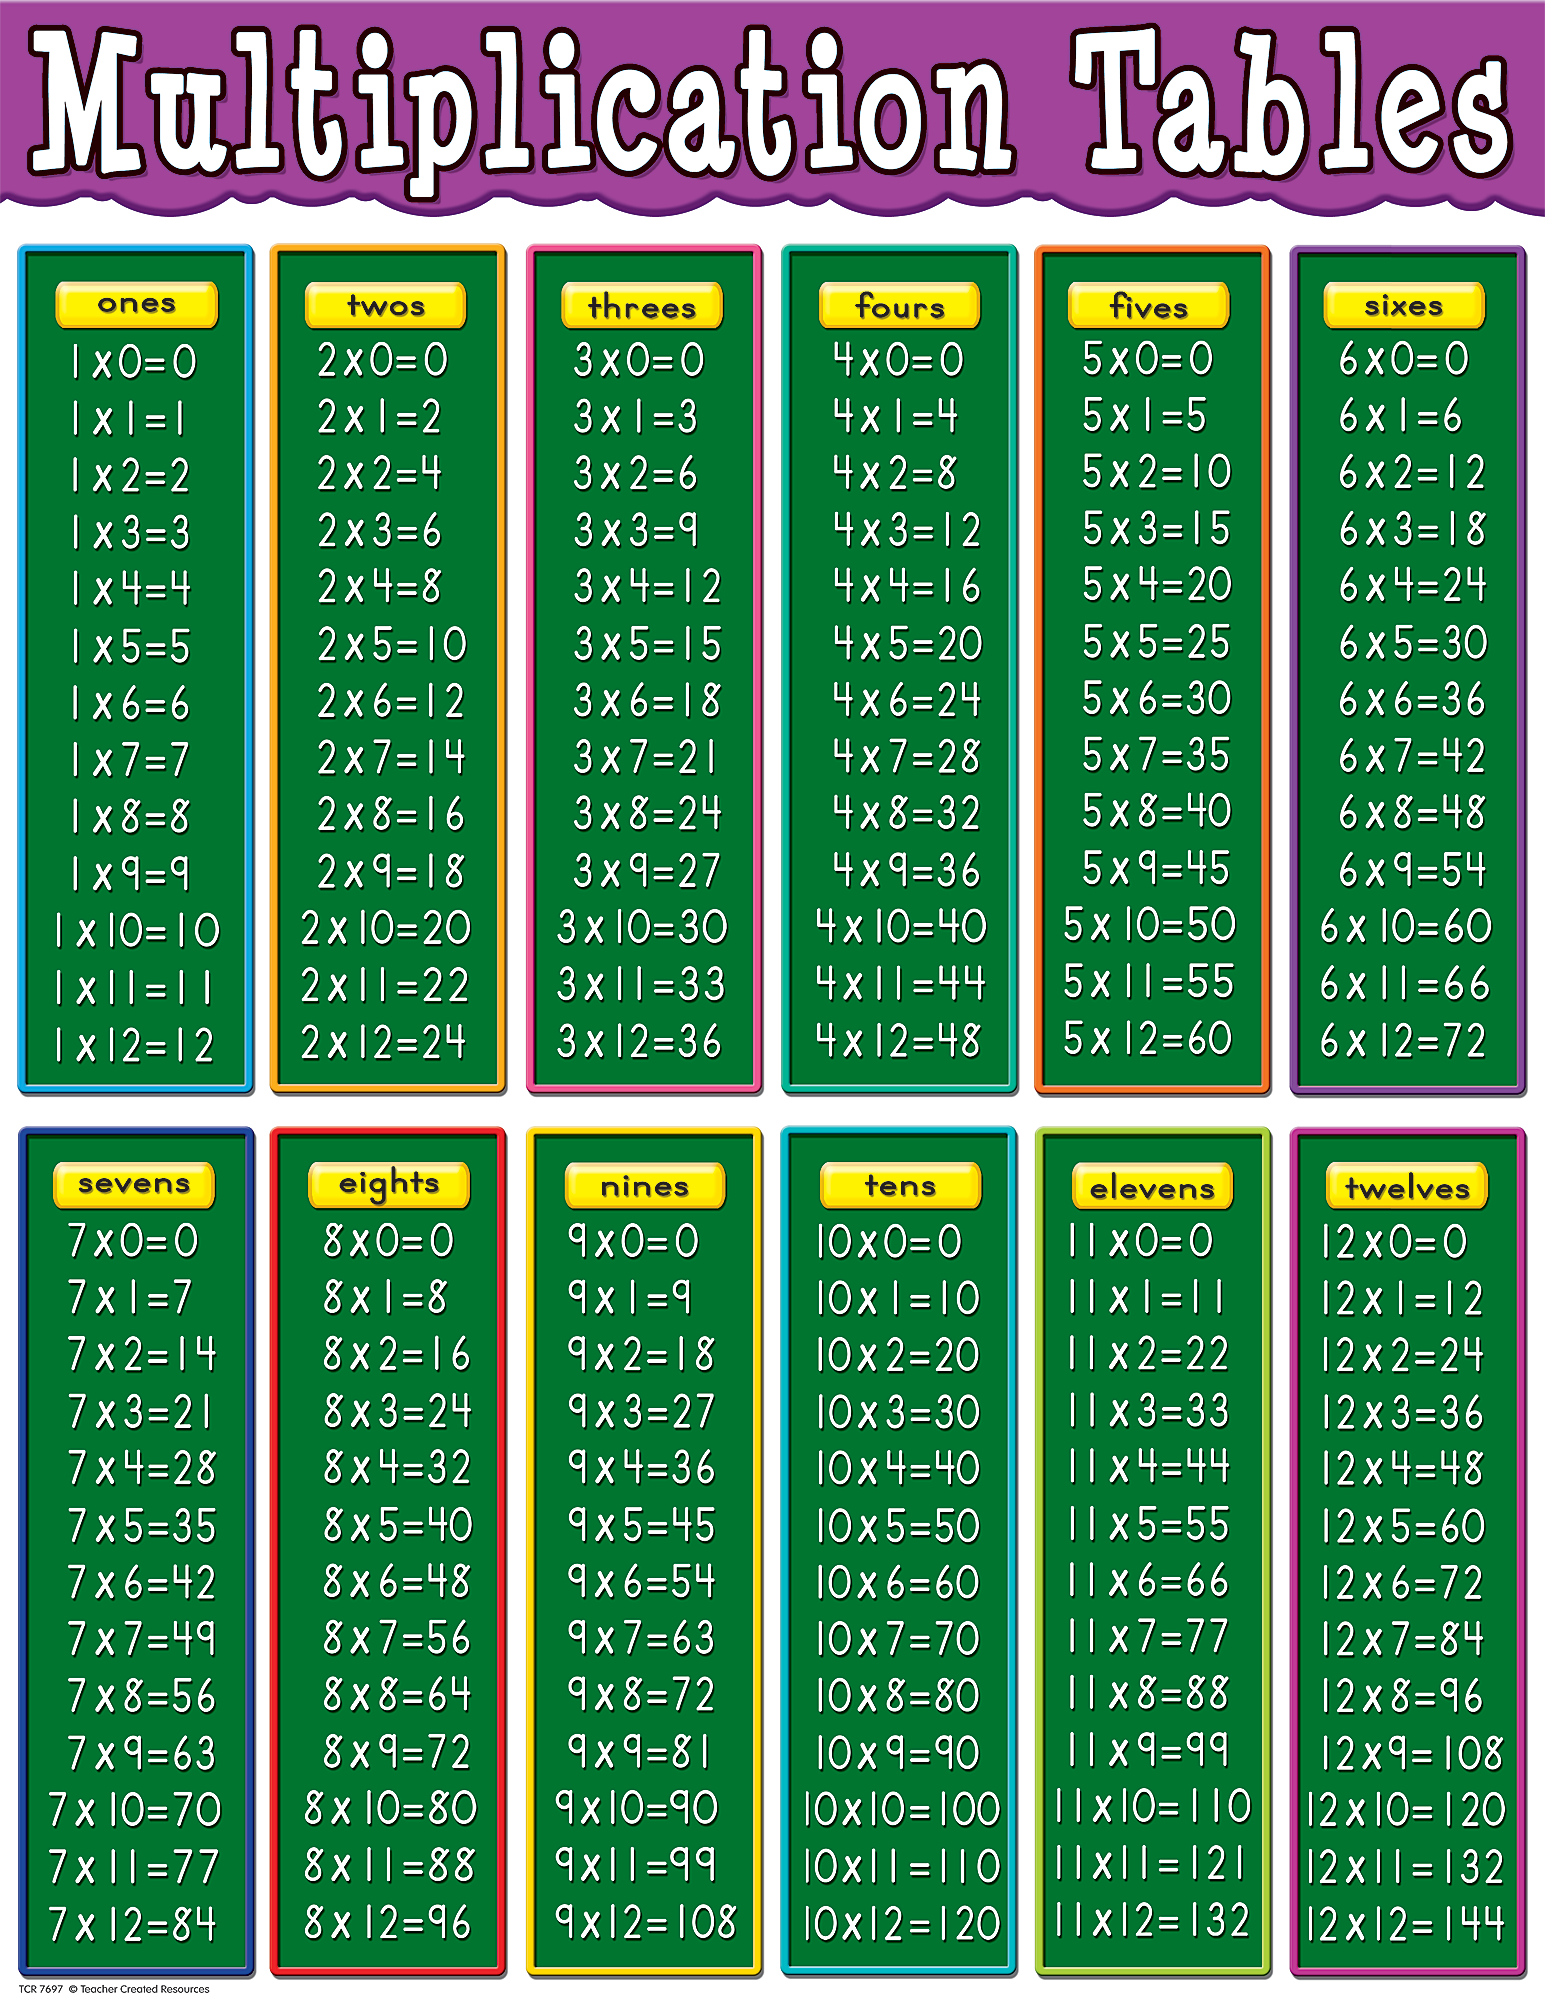 Multiplication Table Wallpaper. Multiplication Table Wallpaper, Multiplication Chart Wallpaper and Wallpaper Long Multiplication Calculator